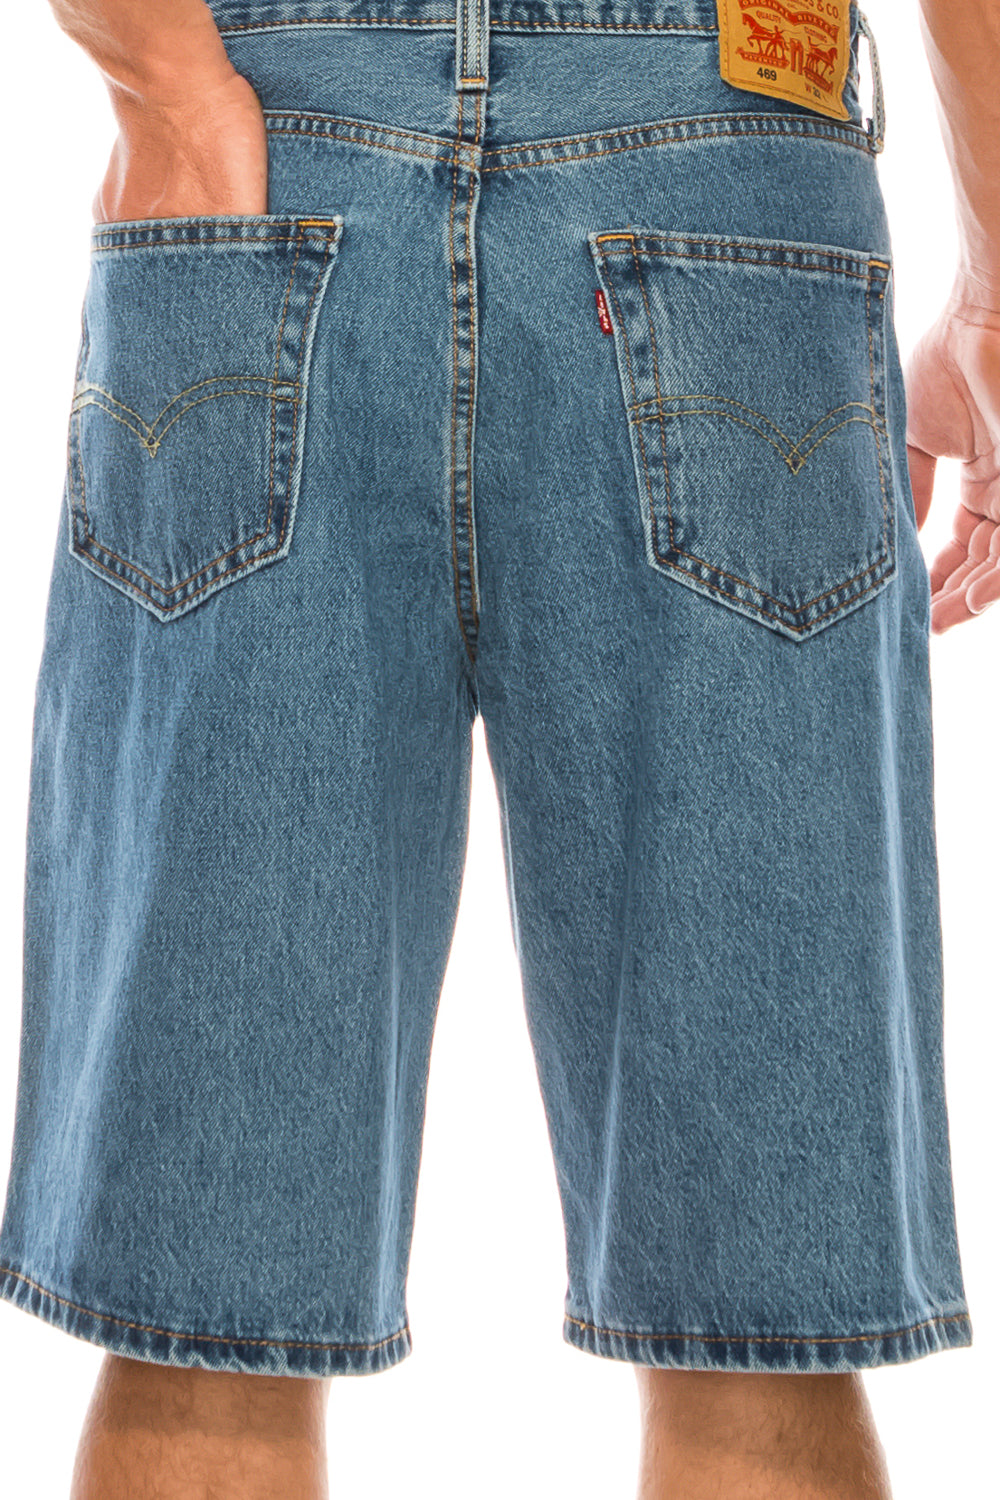 Men's Levi's 469 Loose-Fit Denim Shorts, Size: 42, Light Blue